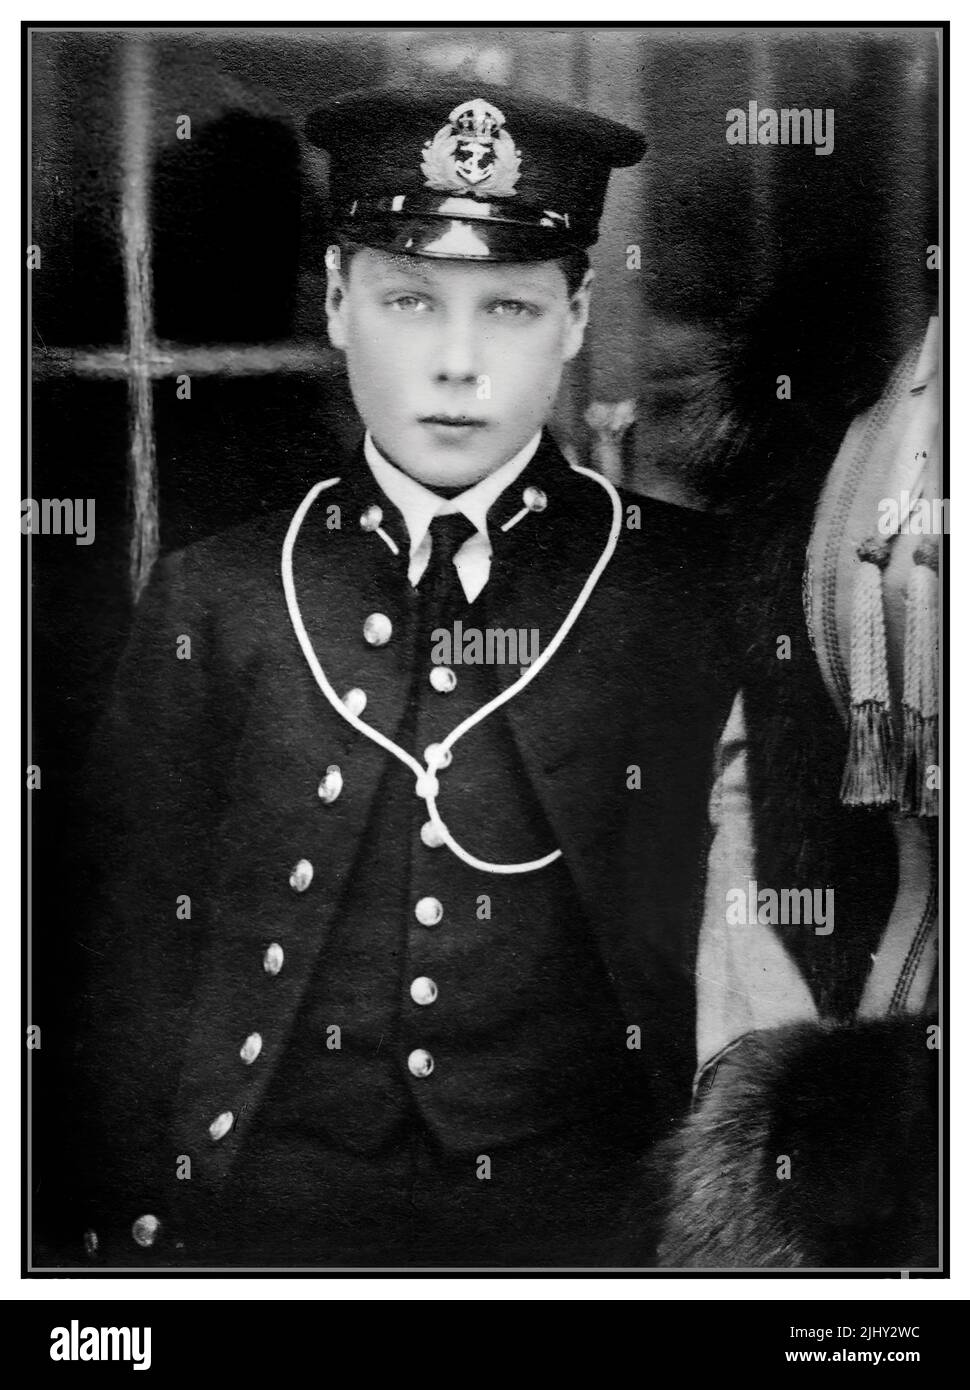 HRH le prince de Galles comme jeune officier de marine britannique Date c1914 autour de la période de la guerre mondiale 1 Banque D'Images